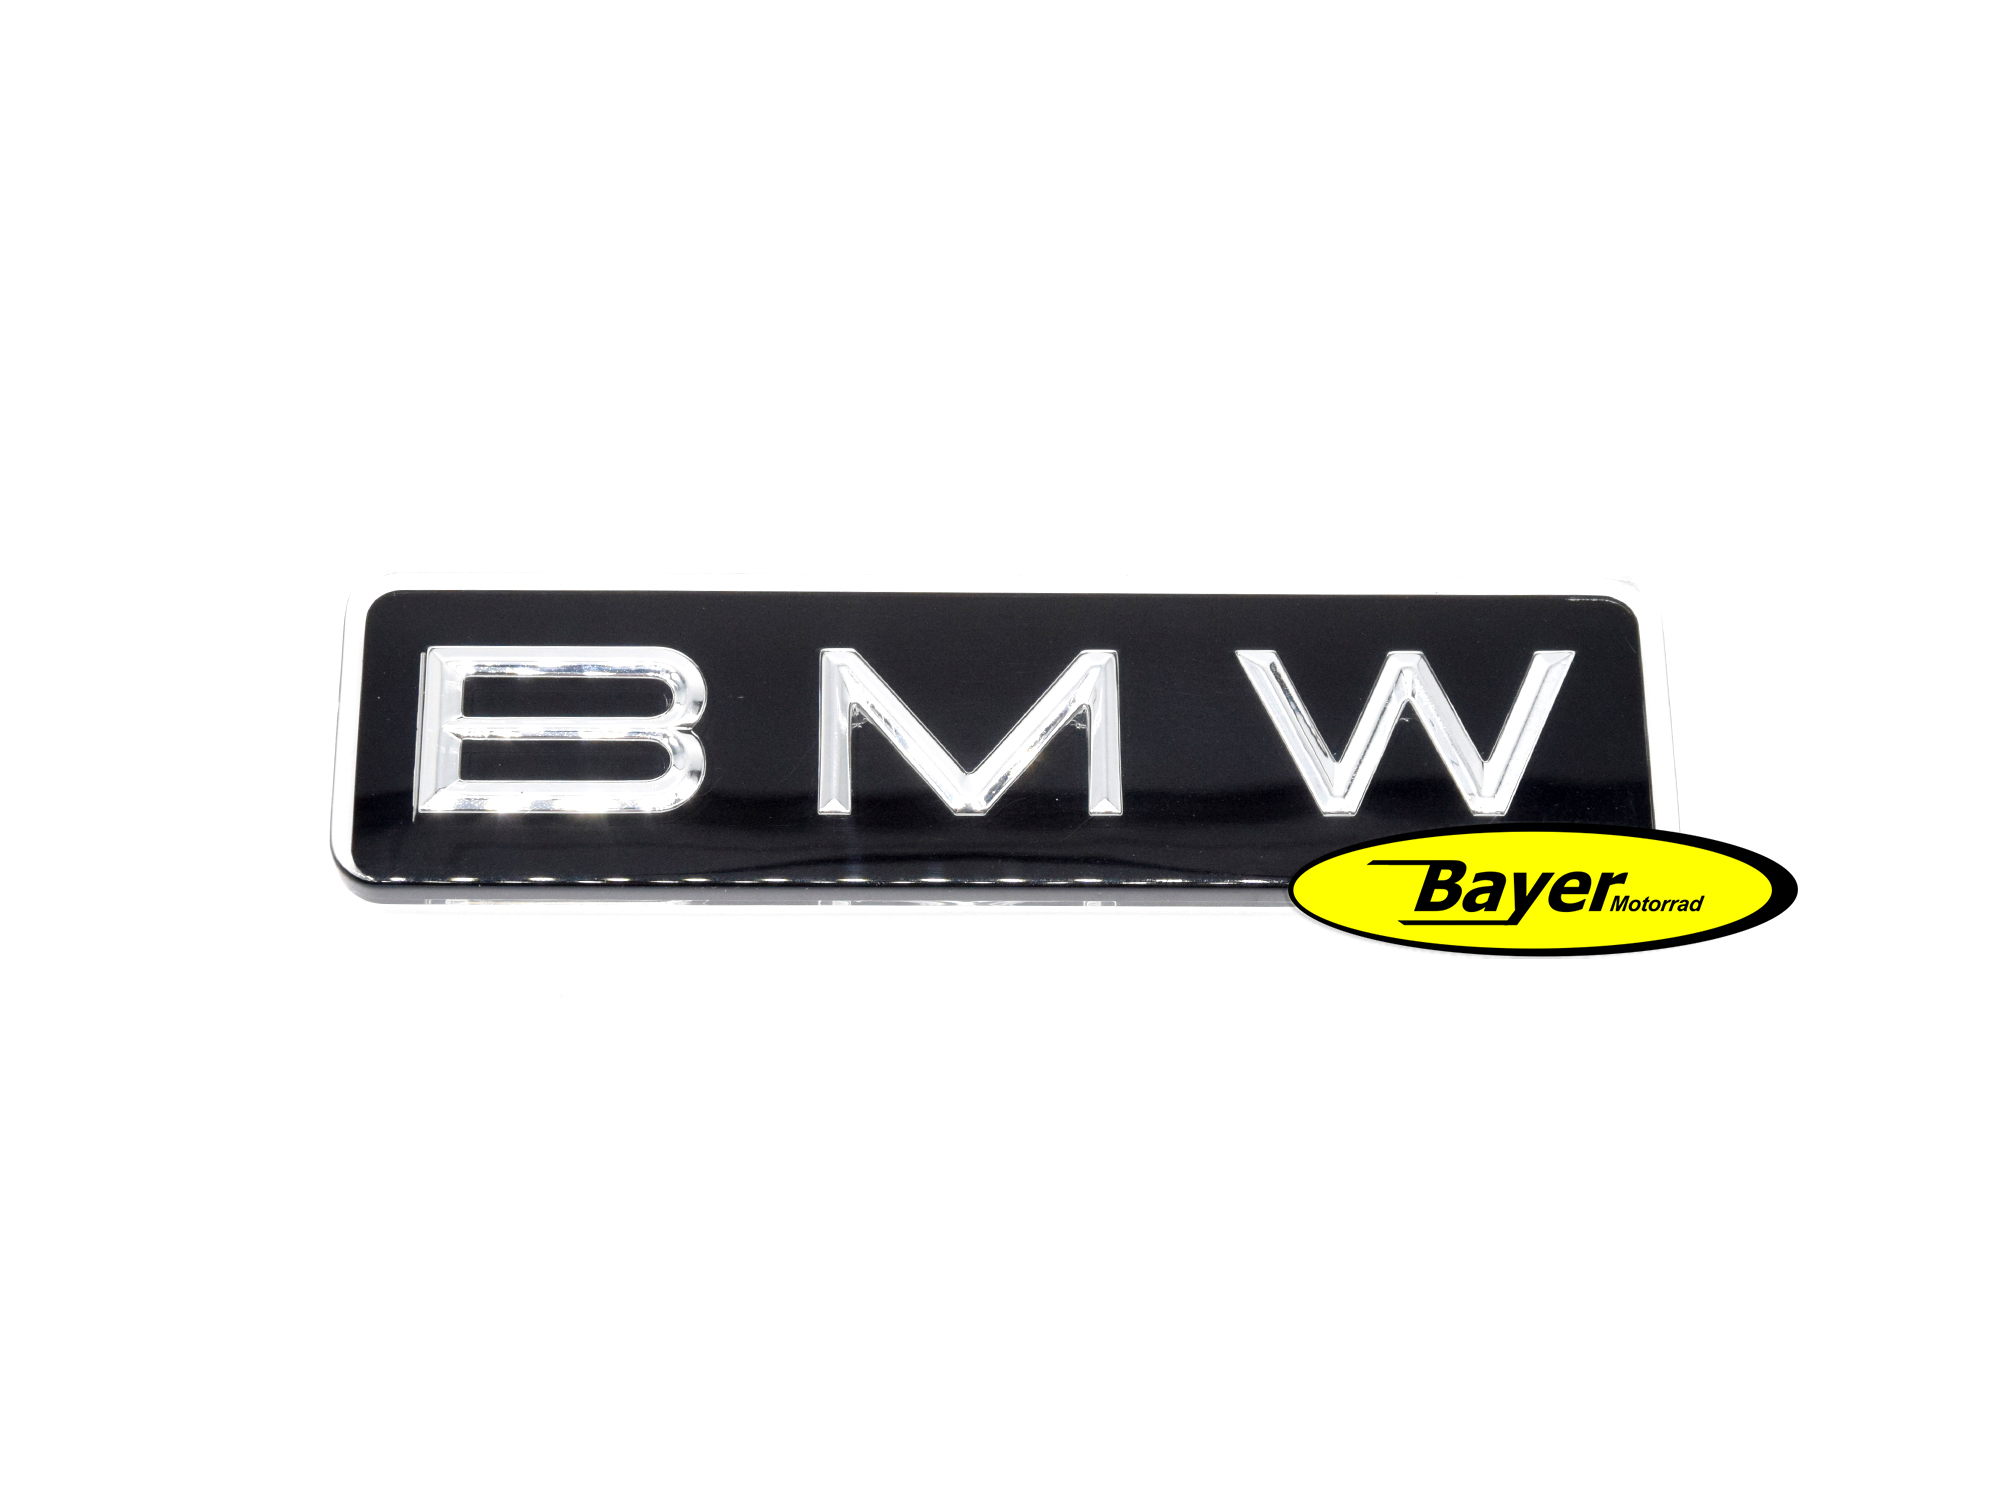 Emblema BMW touring case, modelos boxer R2V